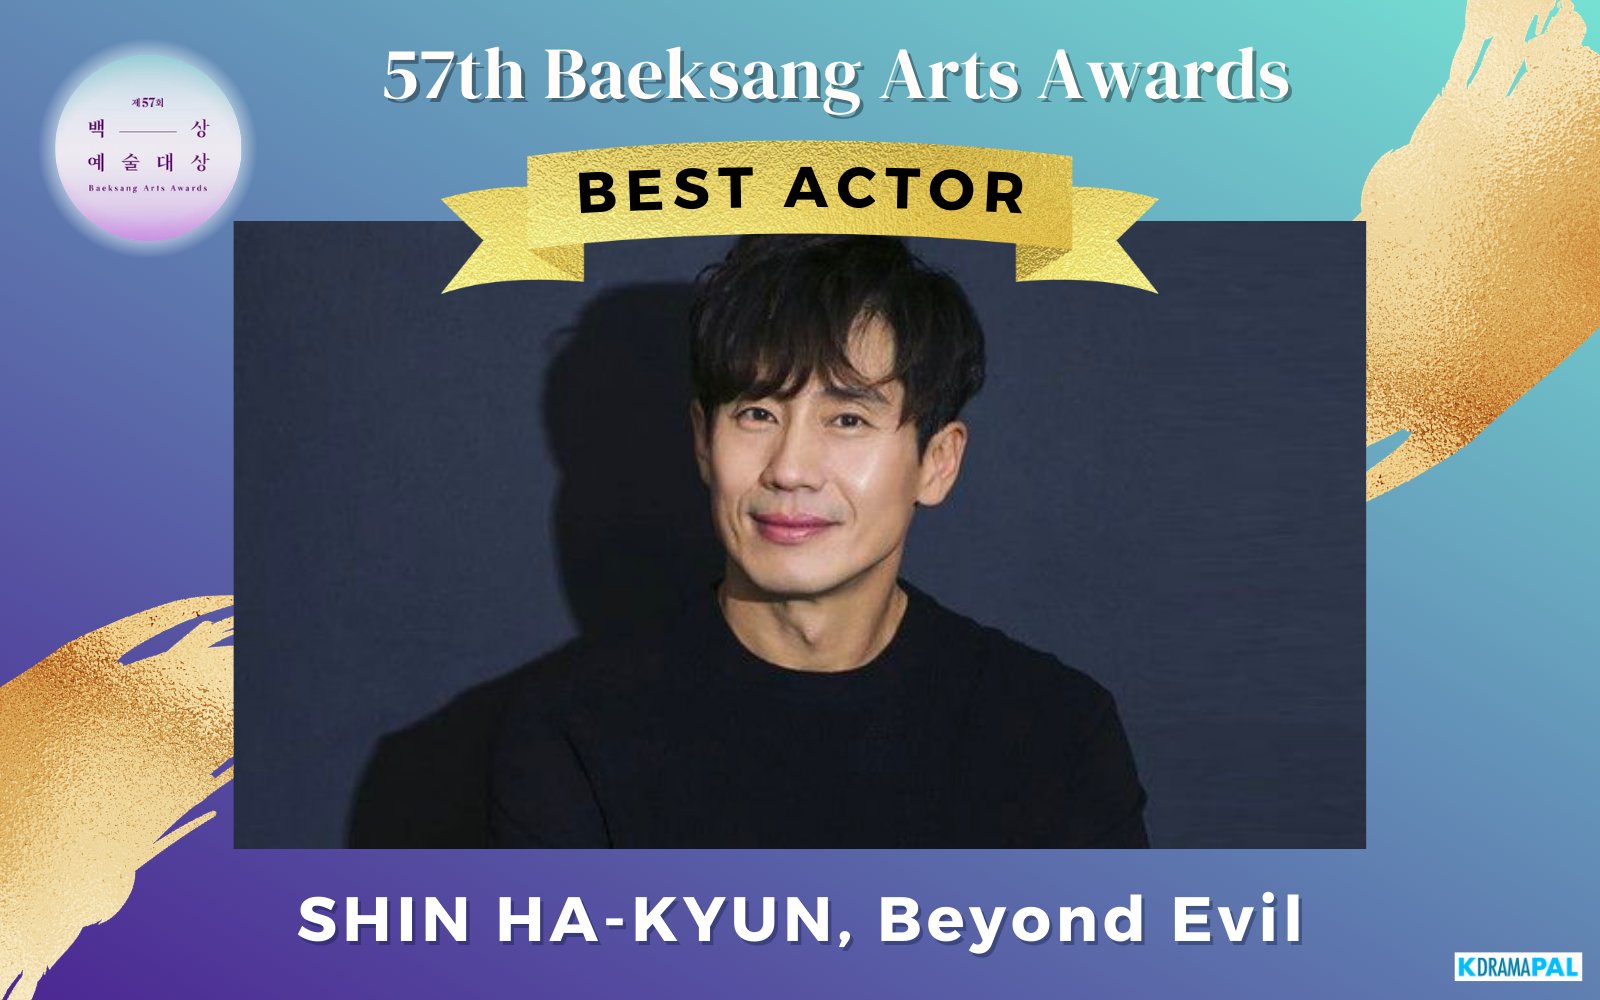 57th Baeksang Arts Awards Mejor actor - Shin Ha-kyun